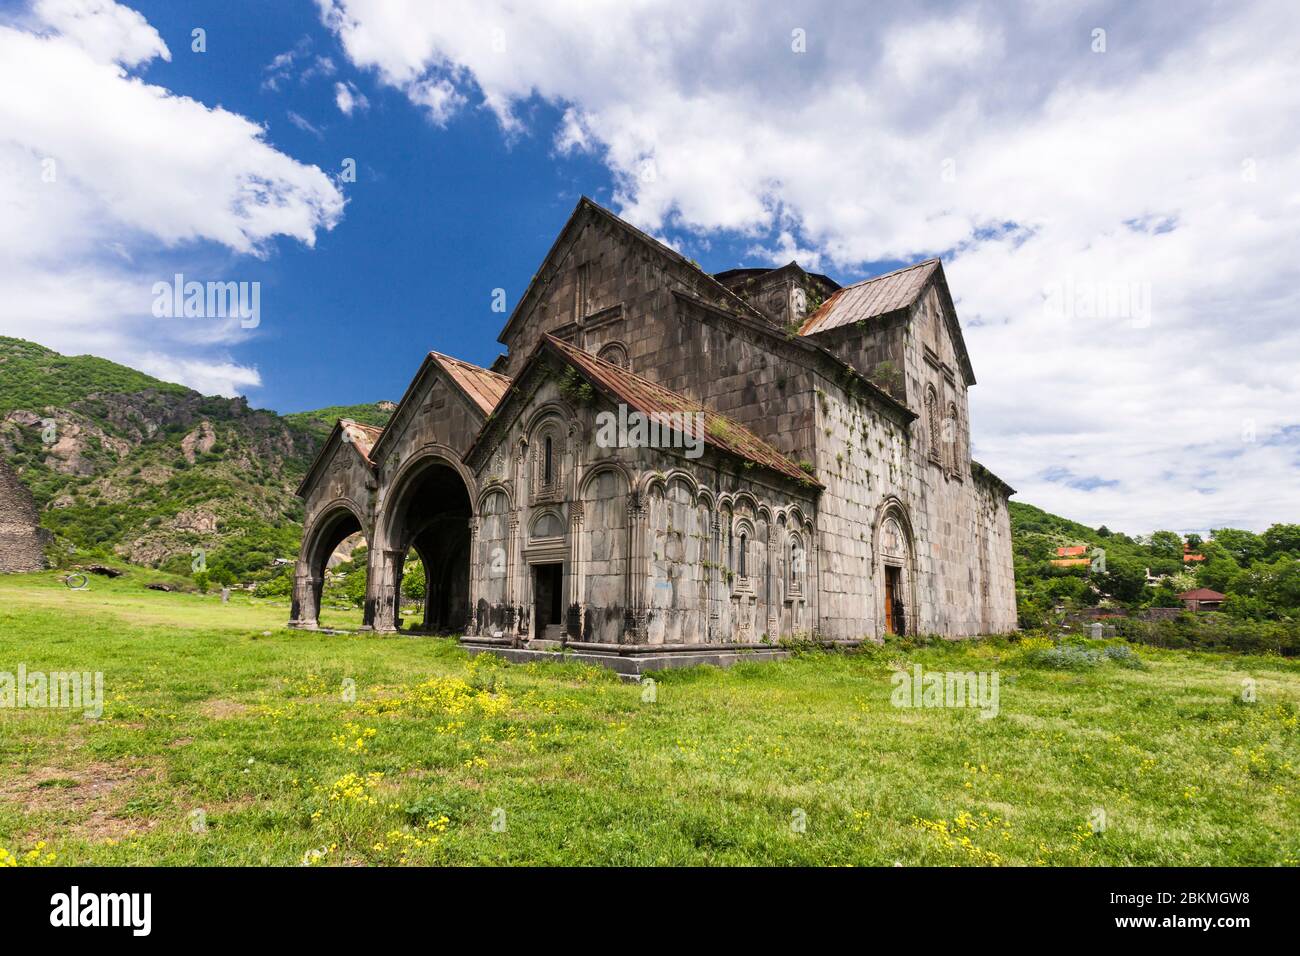 Monastère d'Akhtala, église arménienne, complexe de monastère médiéval, Akhtala, province de Lori, Arménie, Caucase, Asie Banque D'Images